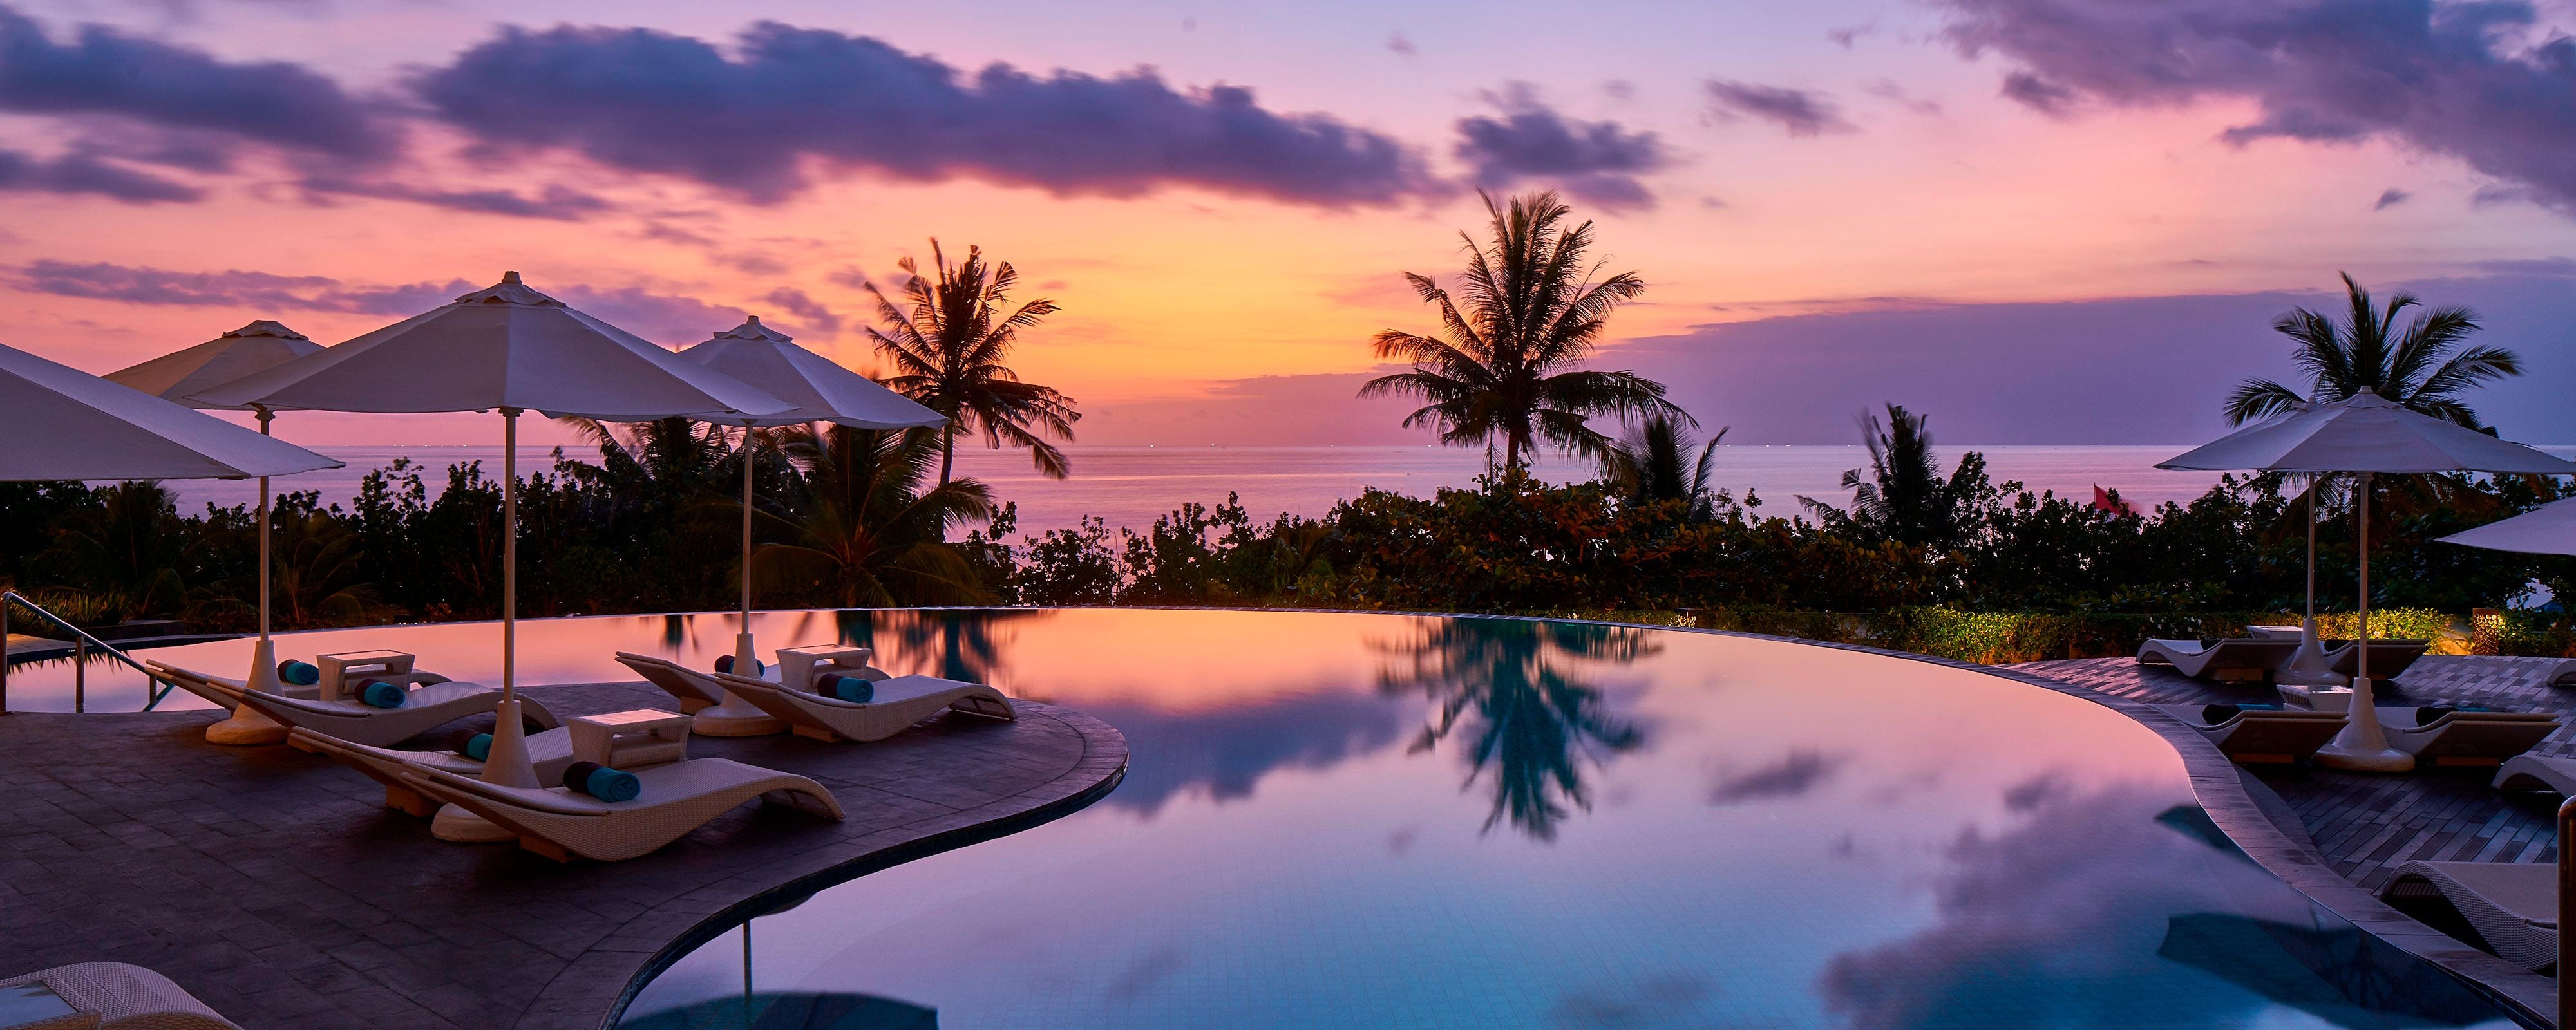 Bali, Kuta, Resort - Kuta Beach Hotel | Marriott Bonvoy